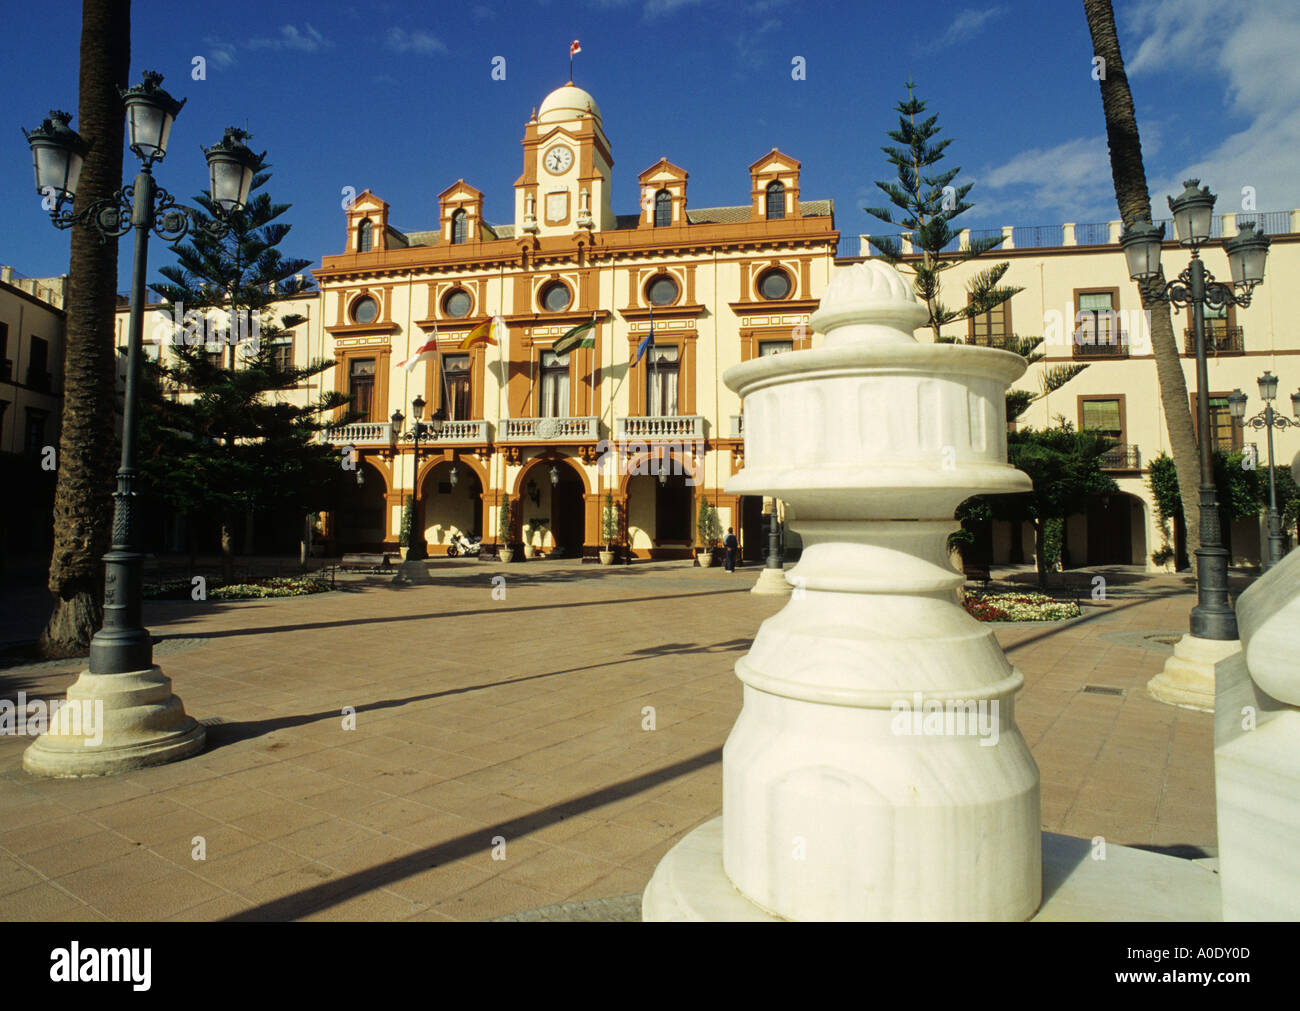 plaza de la constitucion and town hall almeria andalusia spain Stock Photo